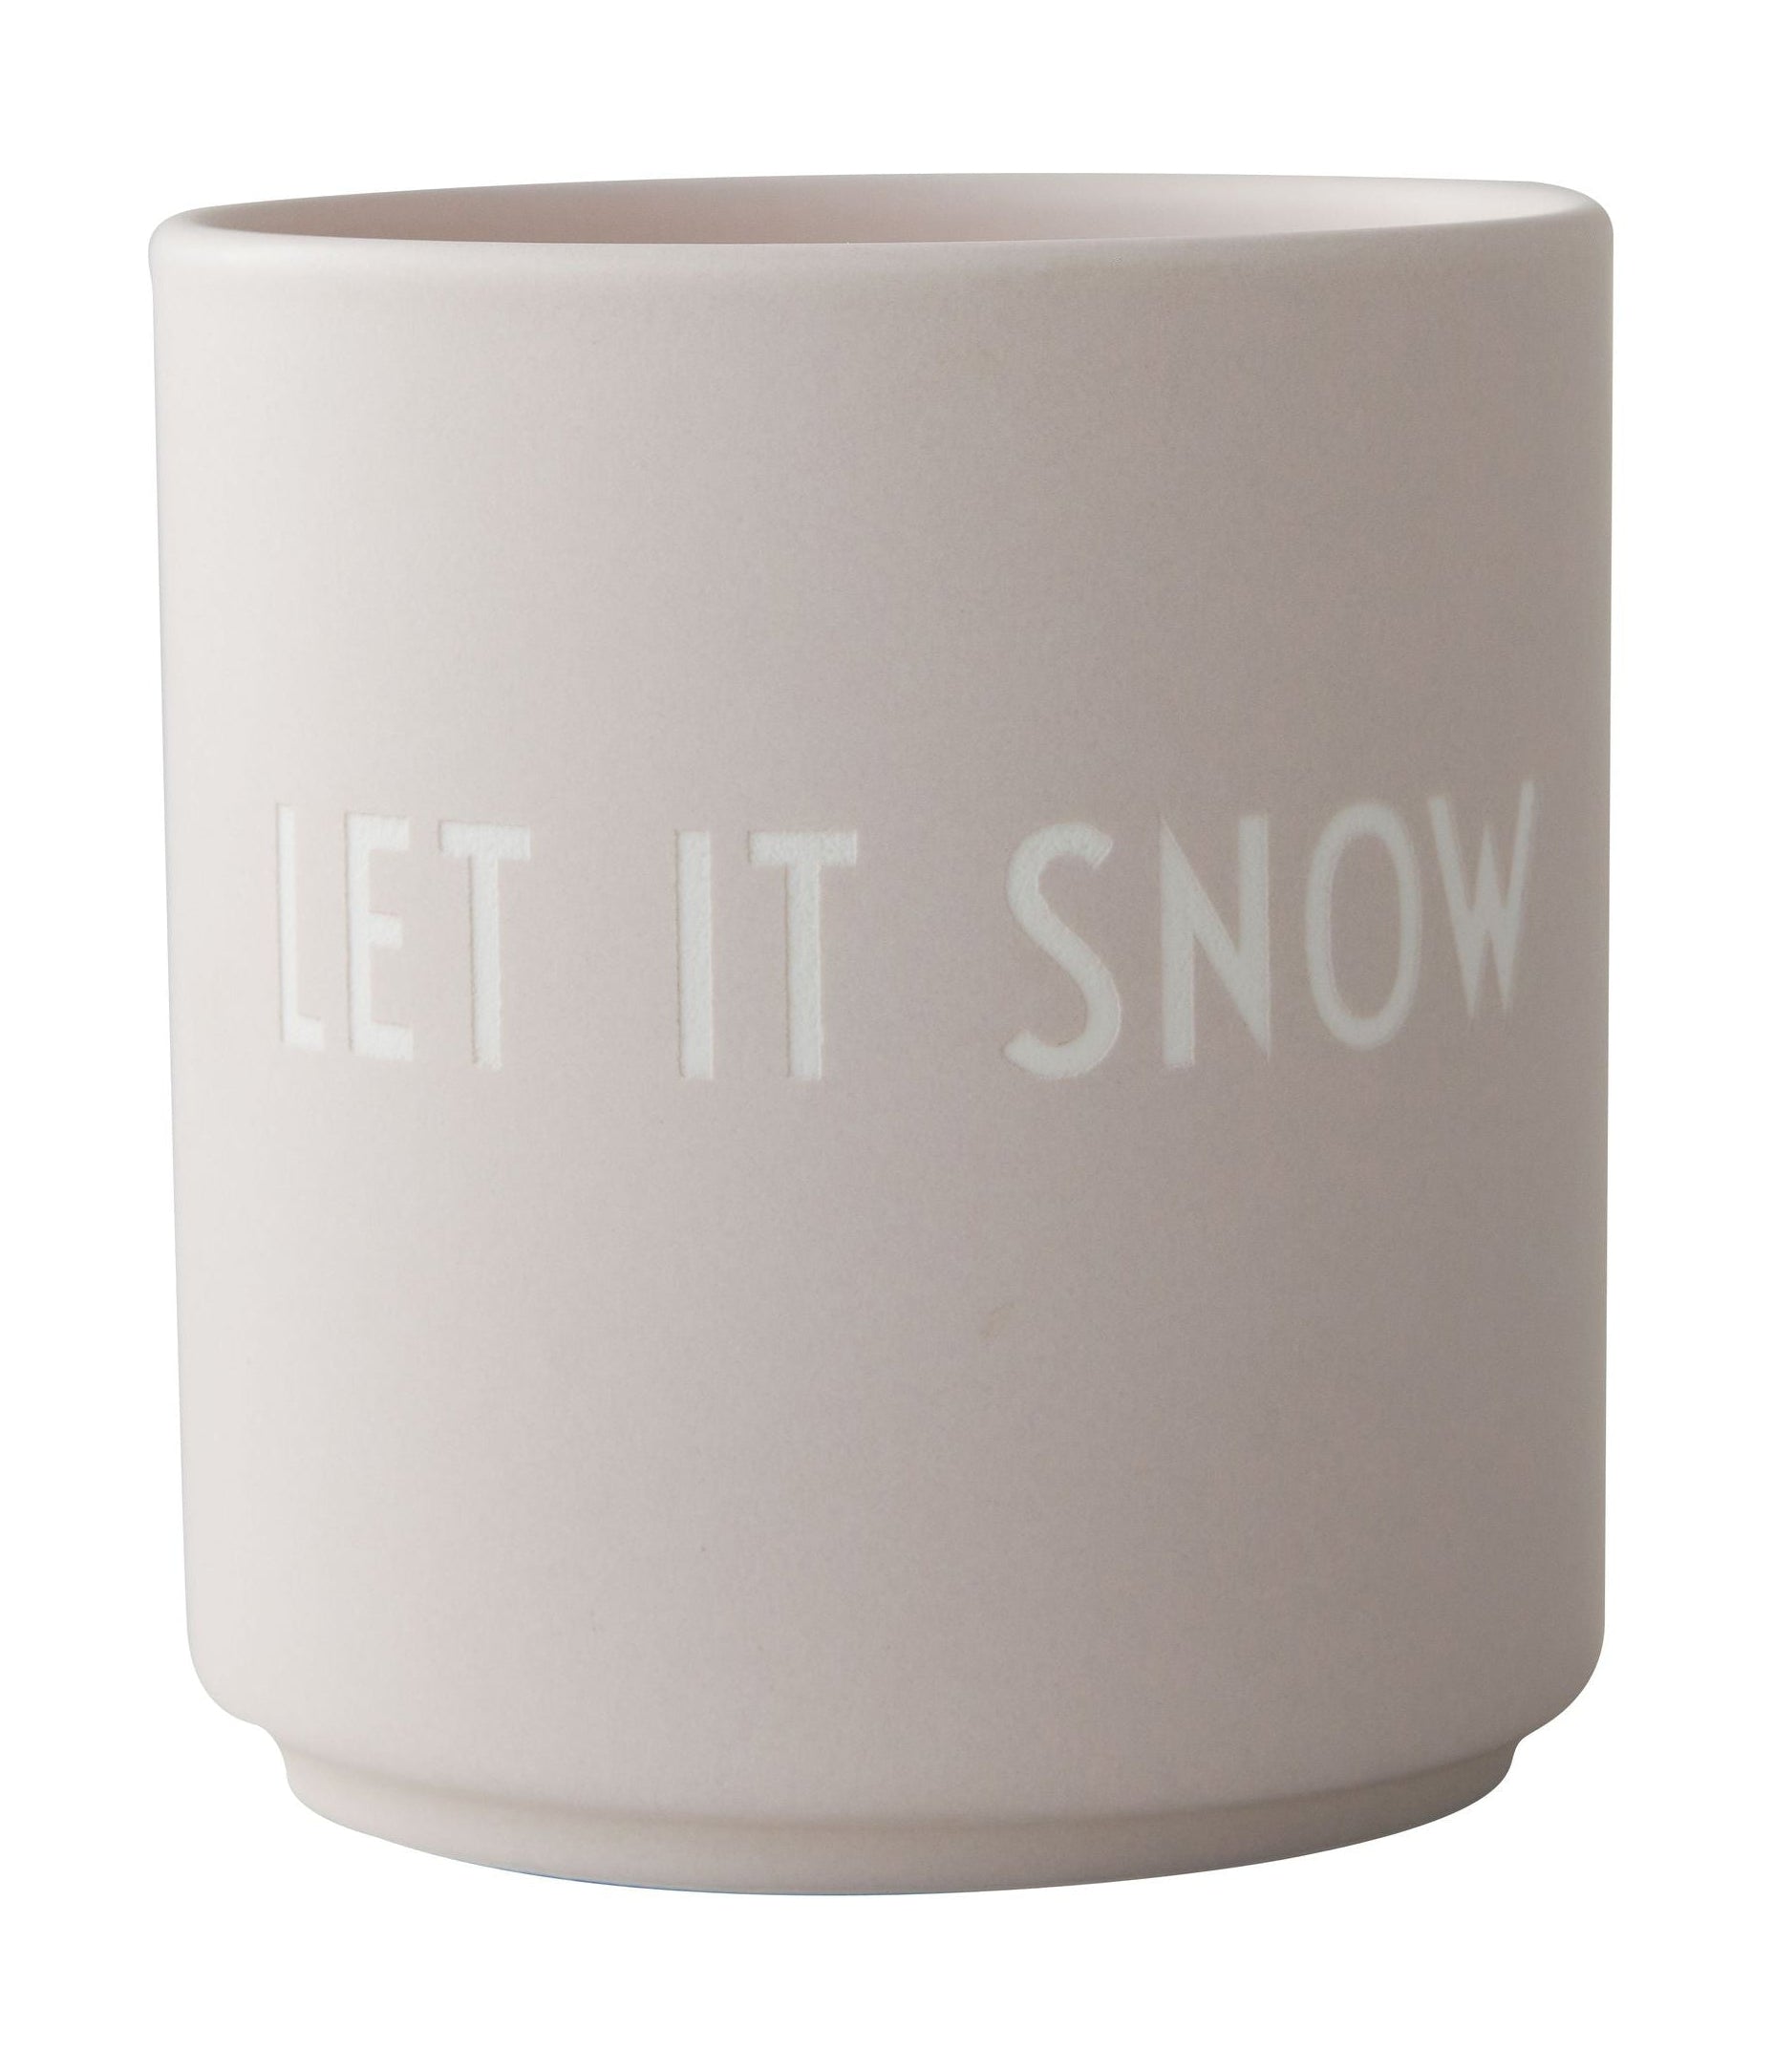 Tasse préférée de la lettre de design, laissez-le neige, pastel beige